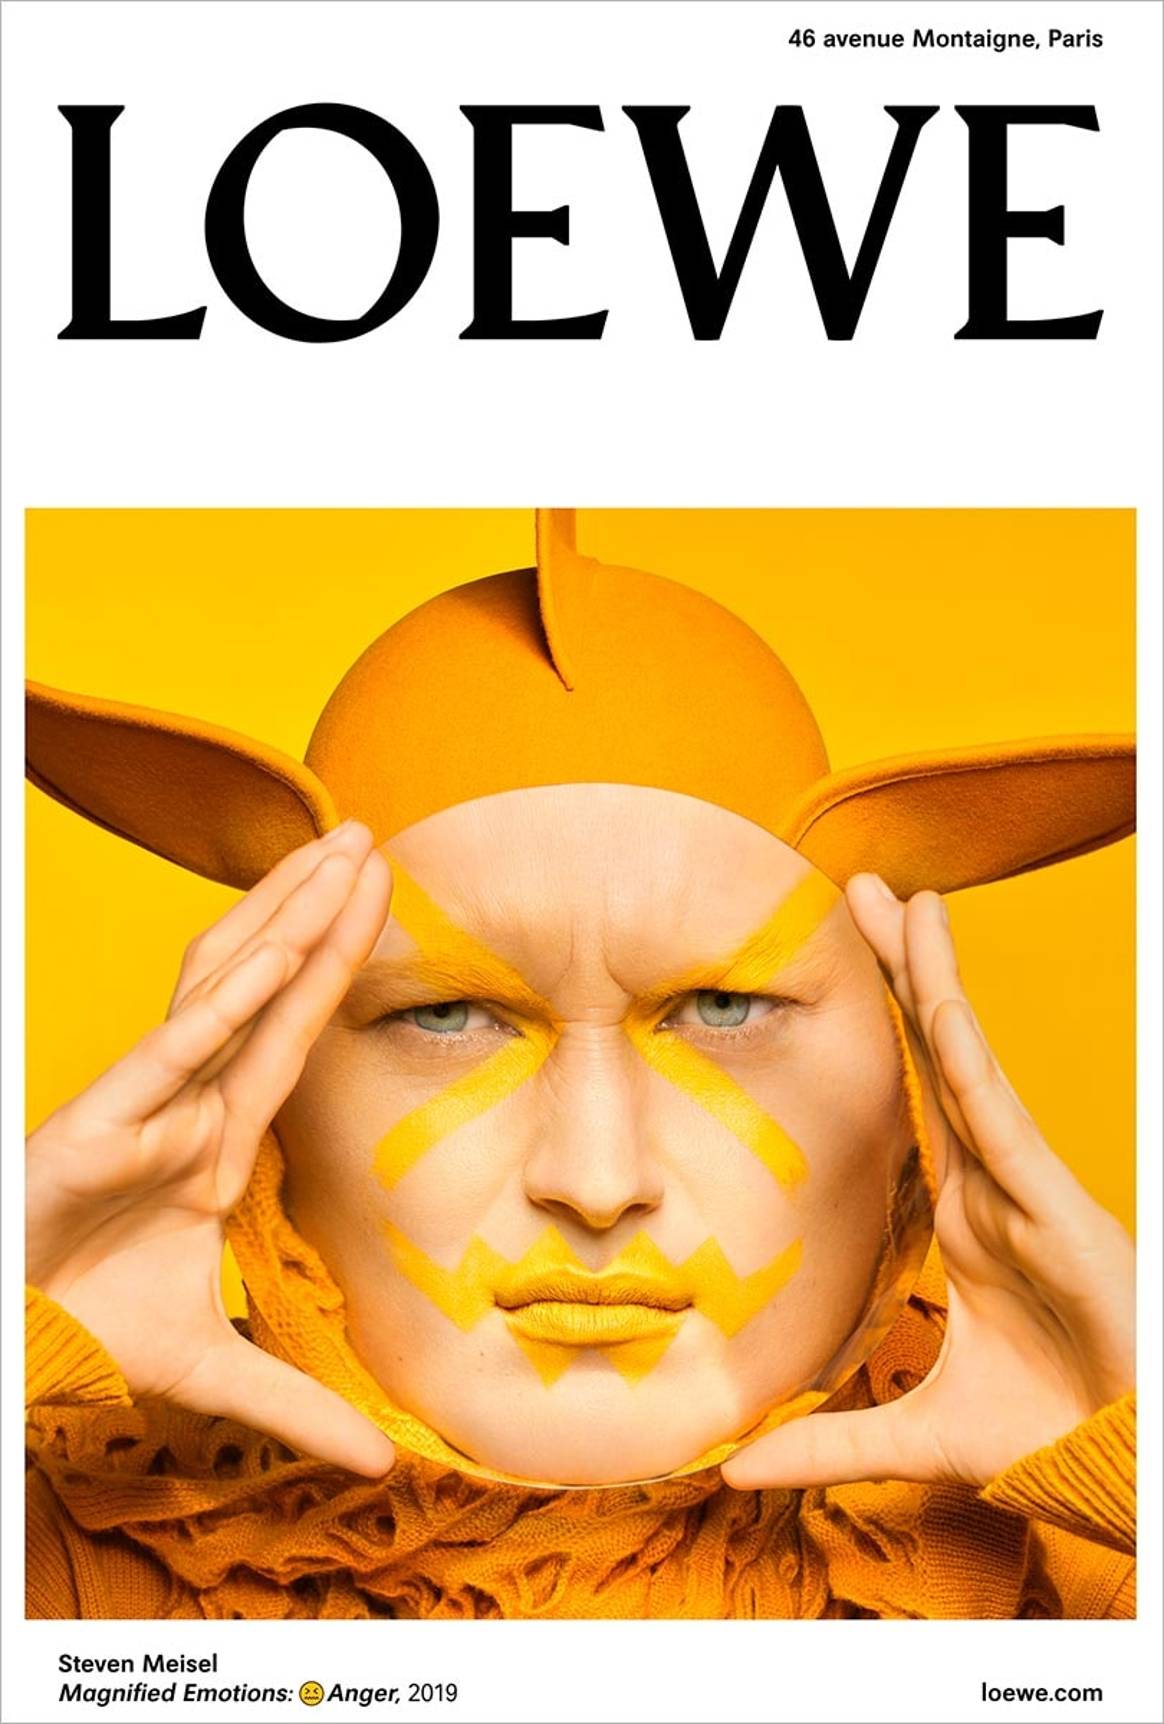 Loewe inunda París con las fotografías de su nueva campaña